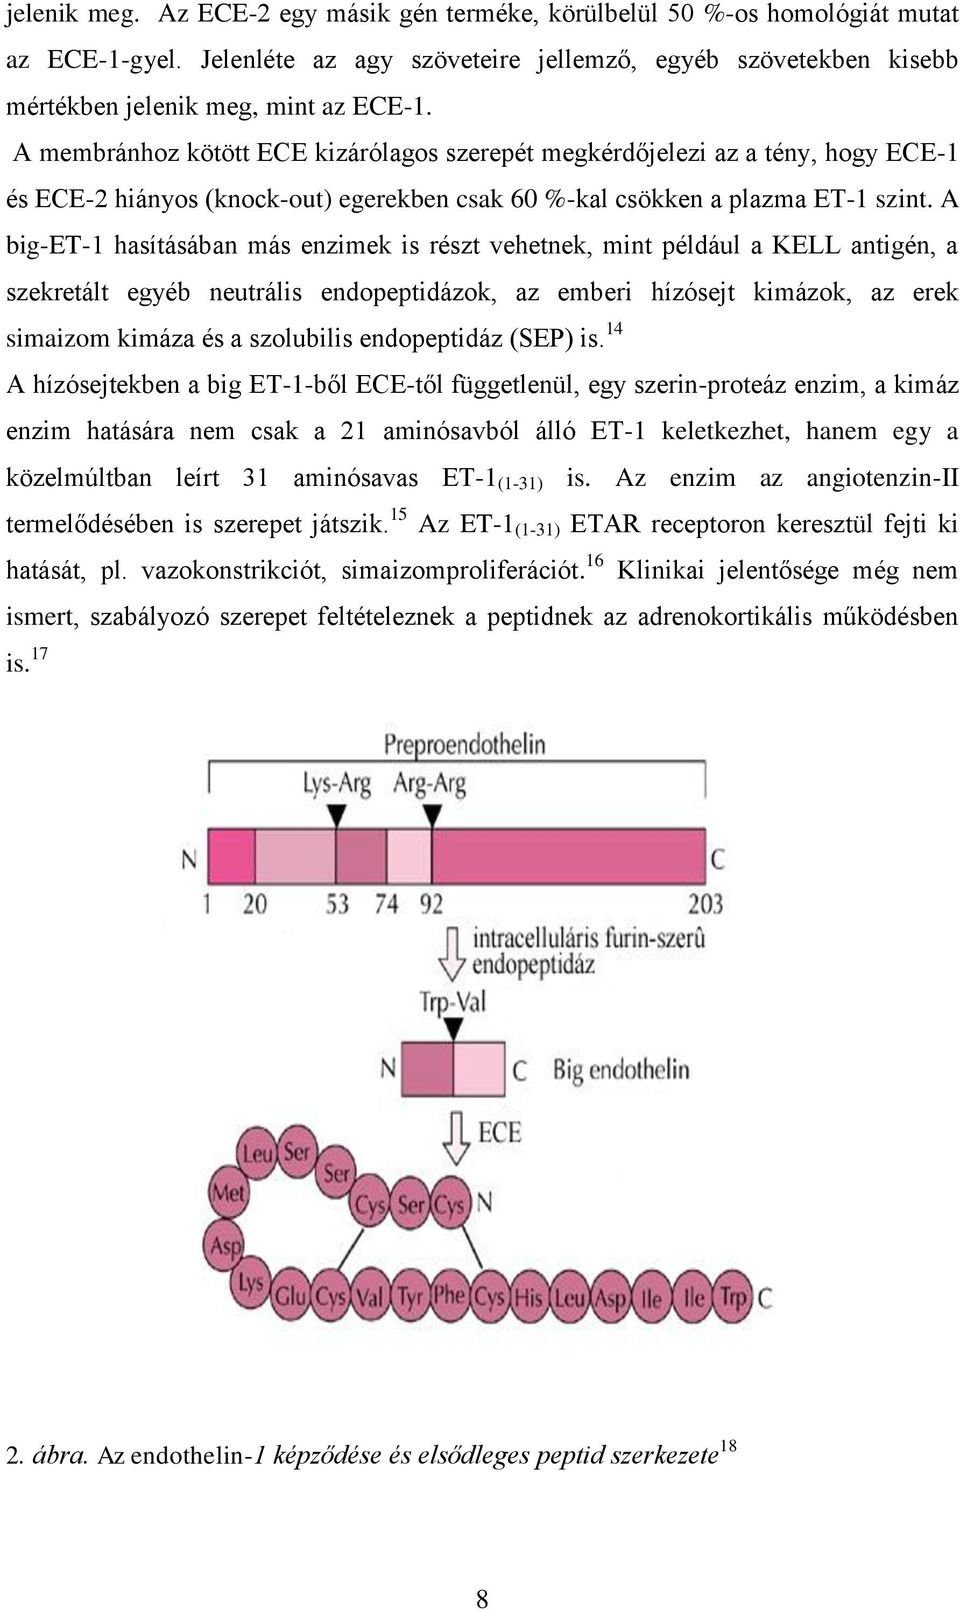 A big-et-1 hasításában más enzimek is részt vehetnek, mint például a KELL antigén, a szekretált egyéb neutrális endopeptidázok, az emberi hízósejt kimázok, az erek simaizom kimáza és a szolubilis